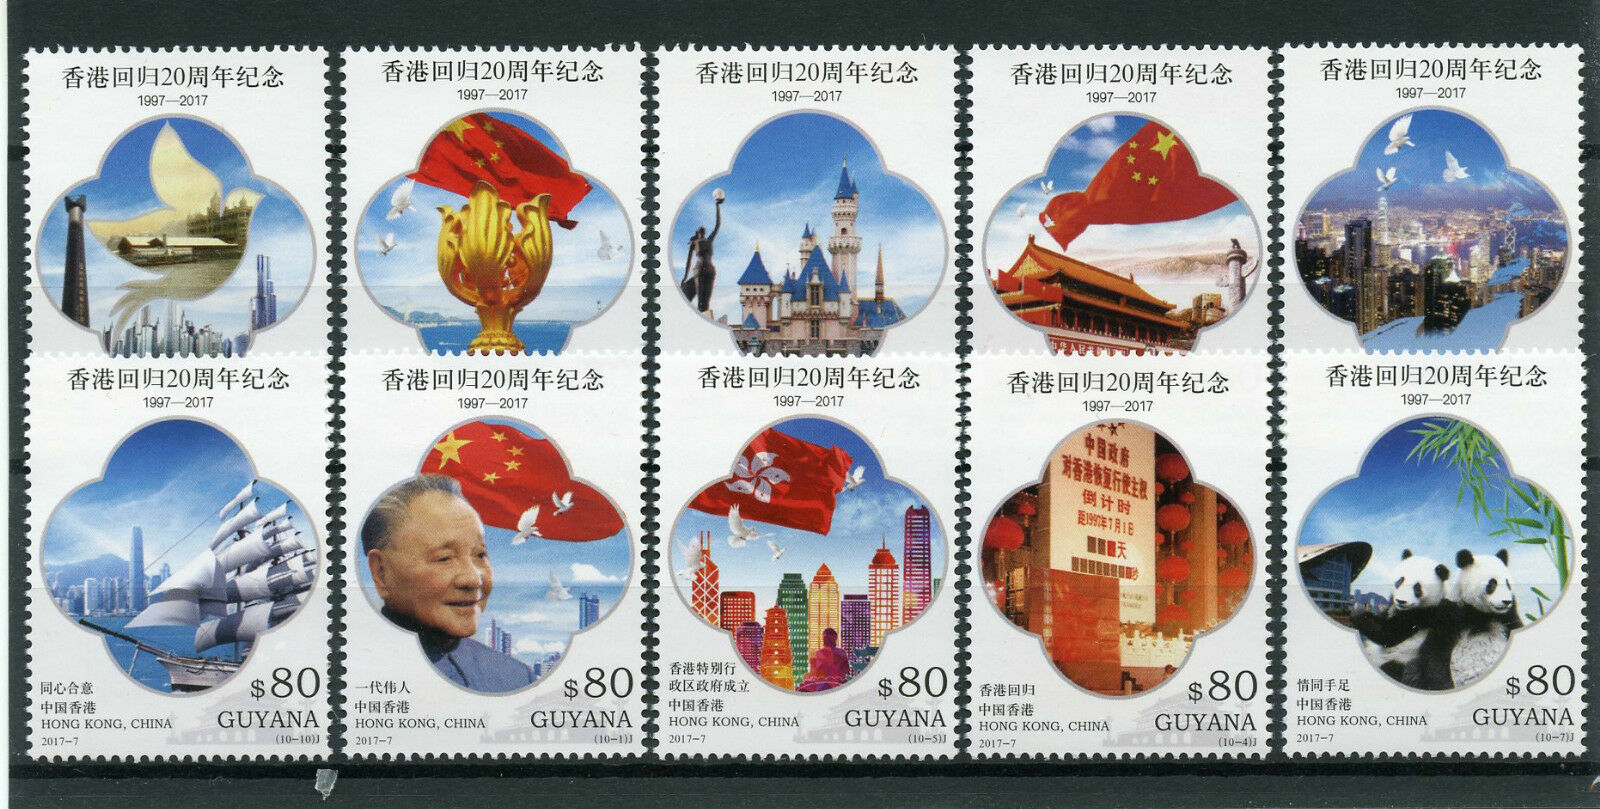 Guyana Architecture Stamps 2017 MNH Hong Kong Returns to China Pandas 10v Set